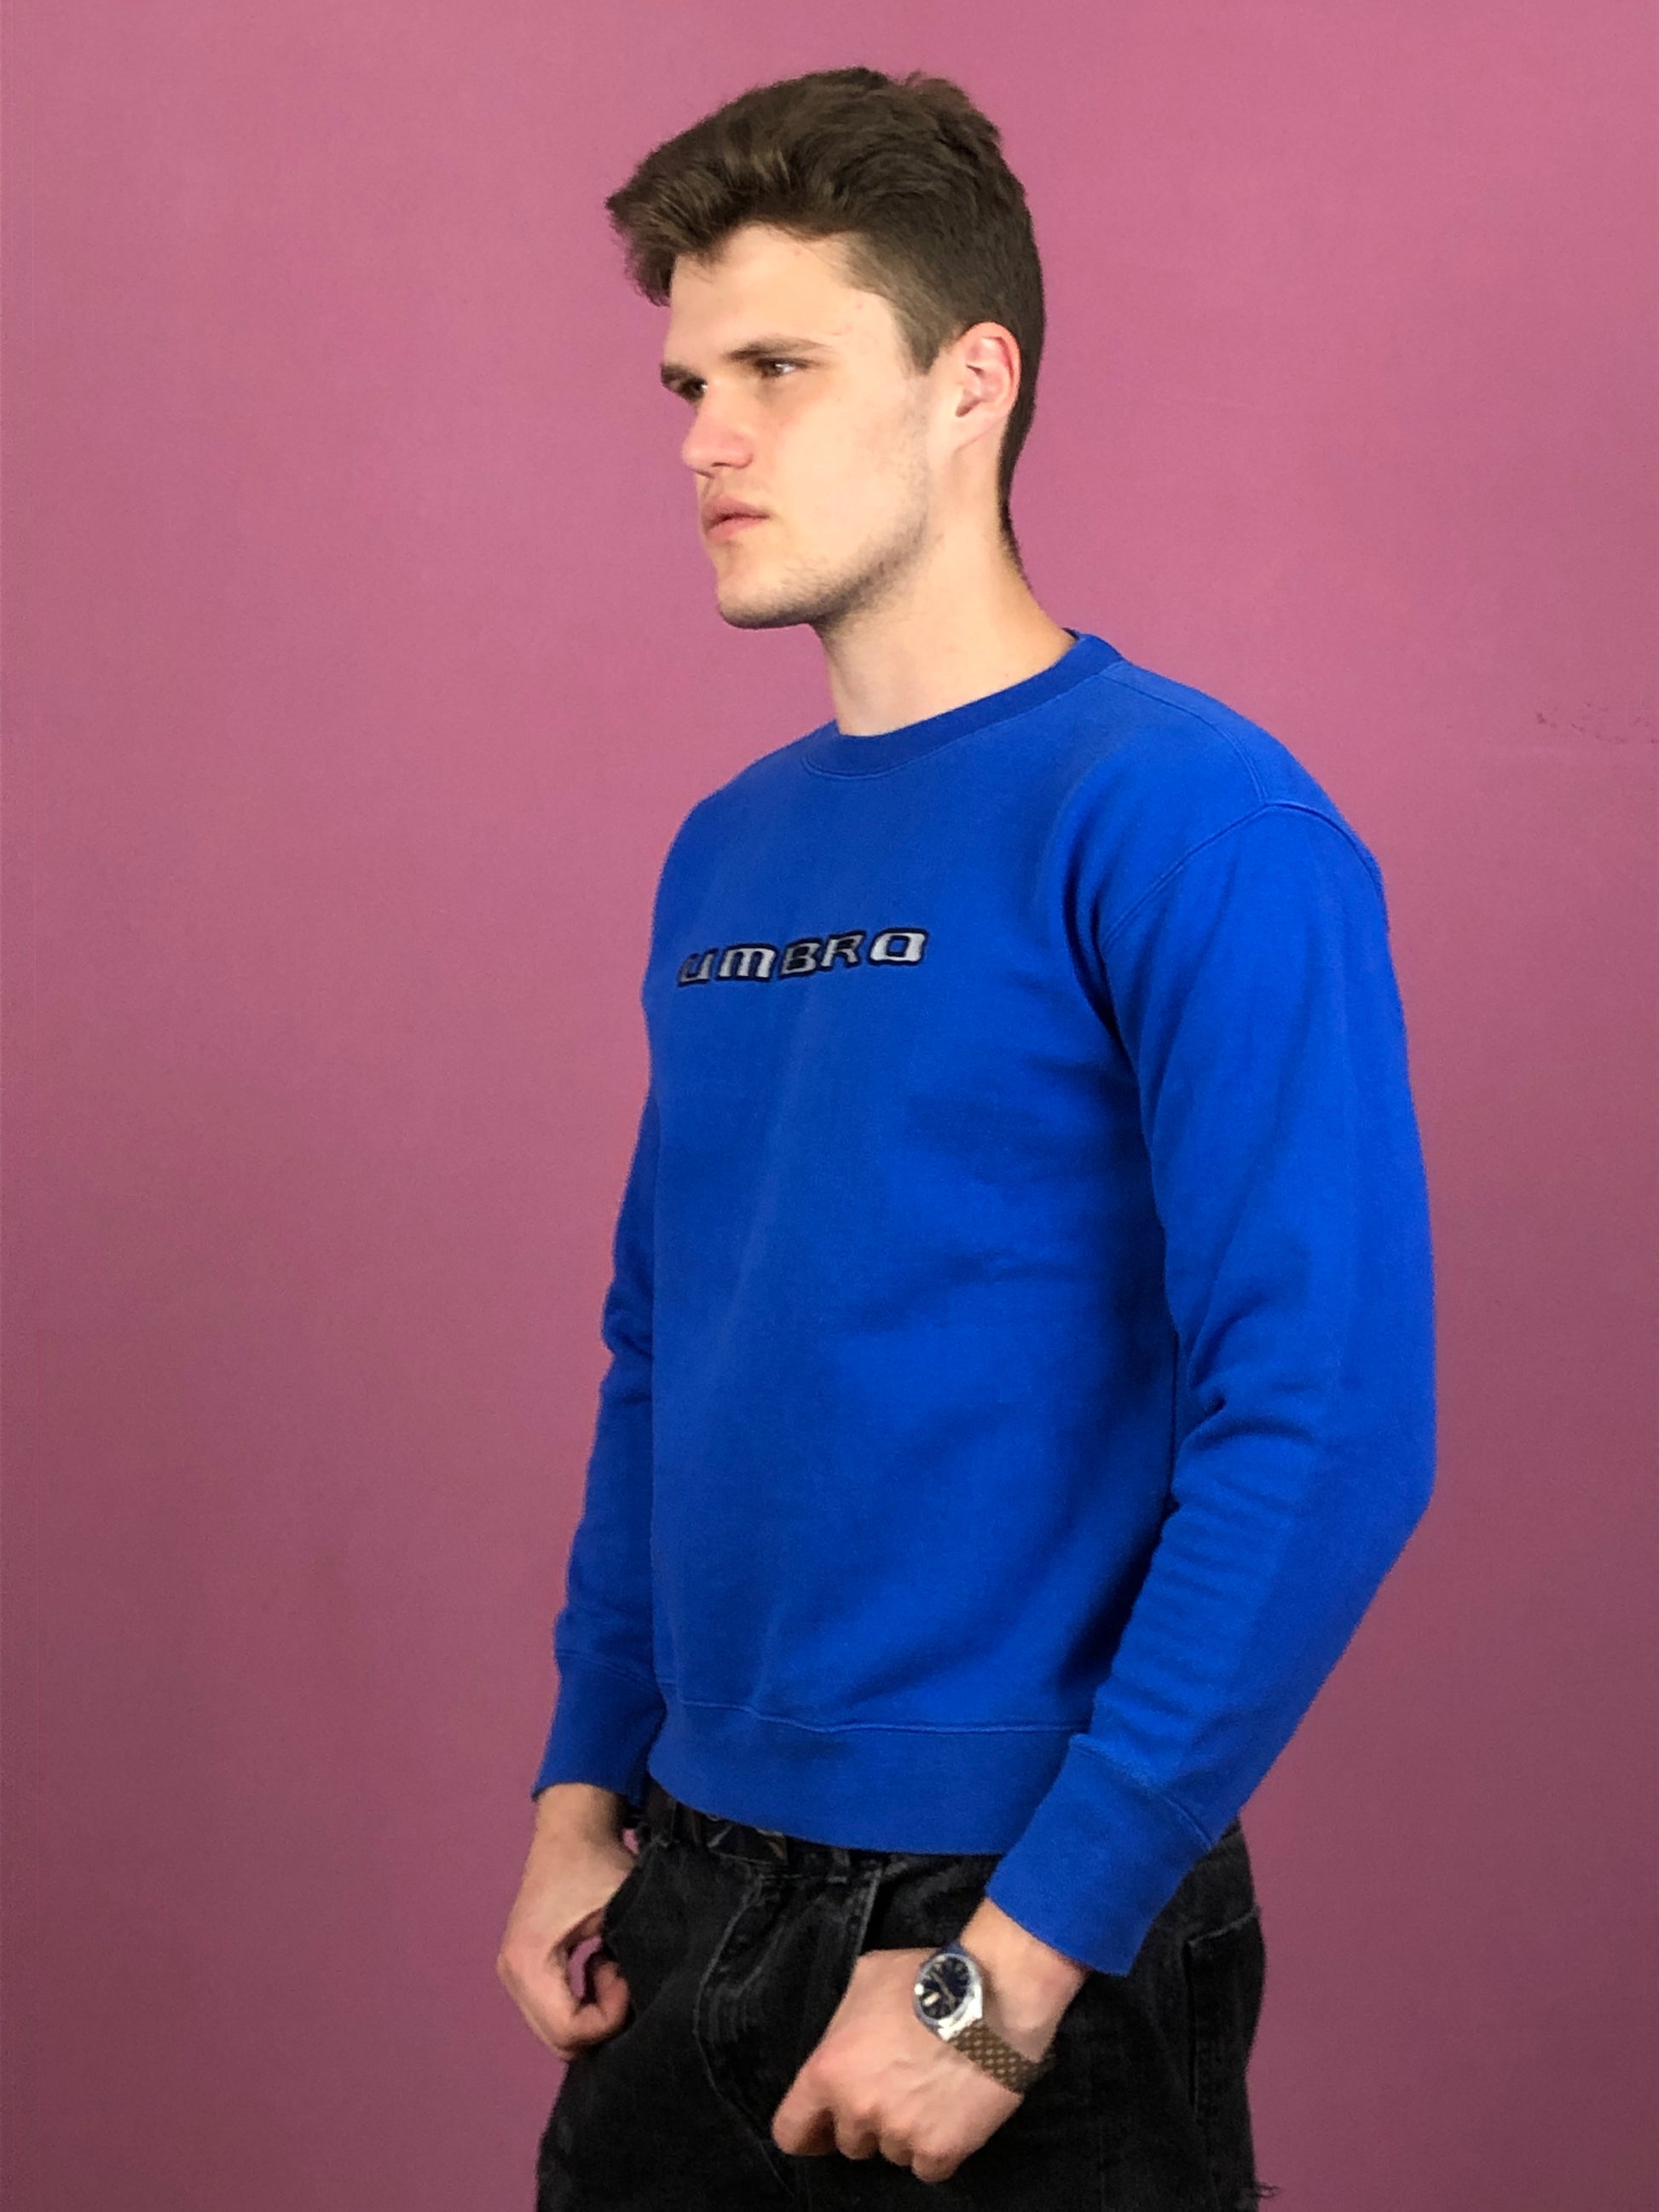 Umbro Vintage Men's Sweatshirt - Small Blue Cotton Blend